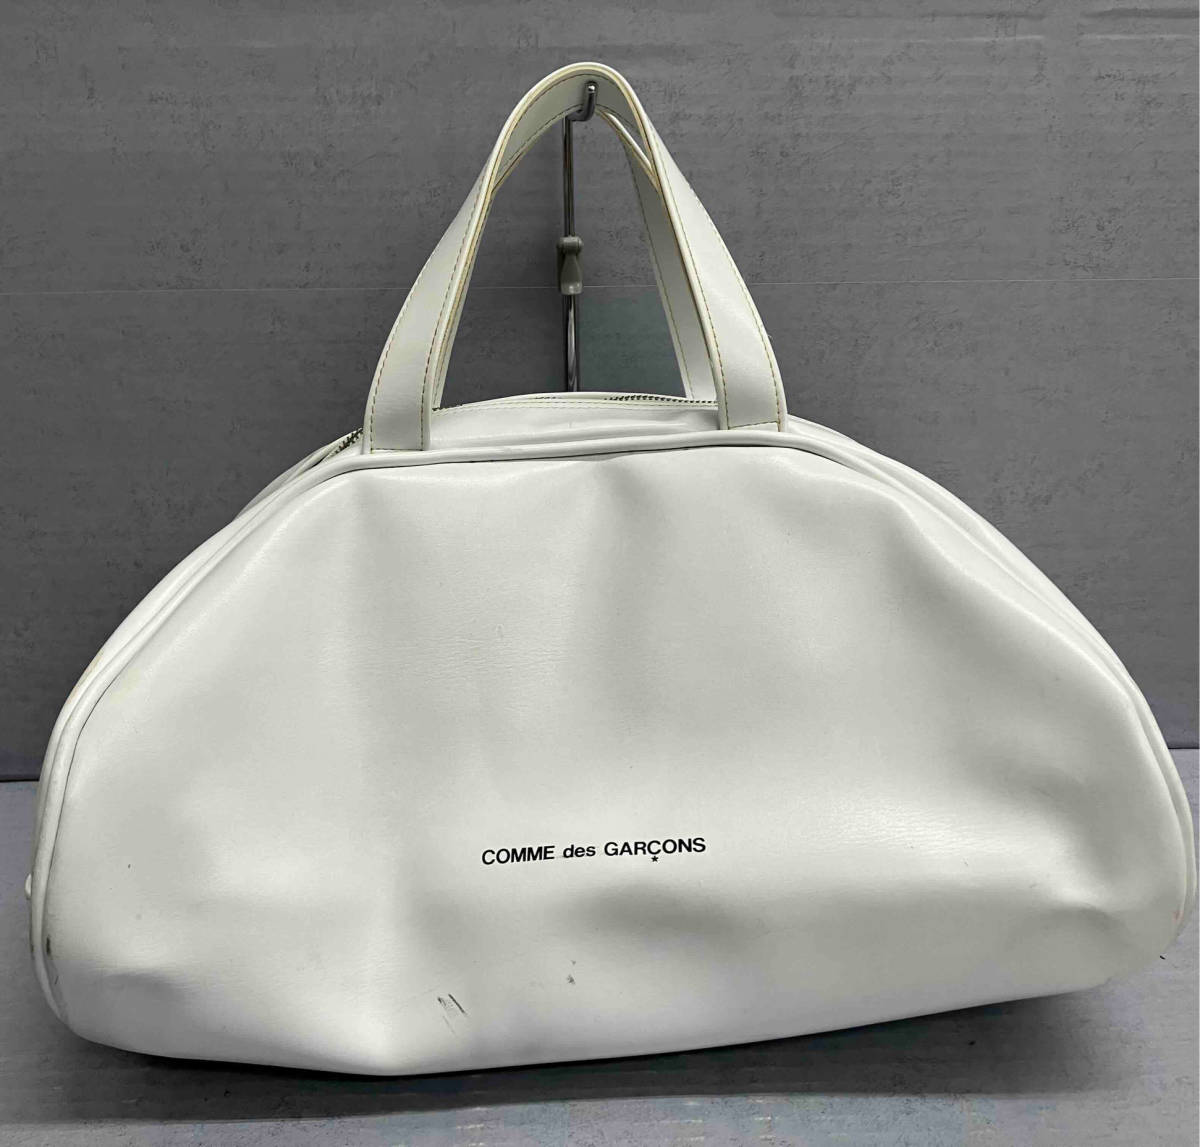 驚きの値段 GI-K20T ボストンバッグ コムデギャルソン GARCONS des COMME メンズ ドーム型 ホワイト レディース かばん、バッグ